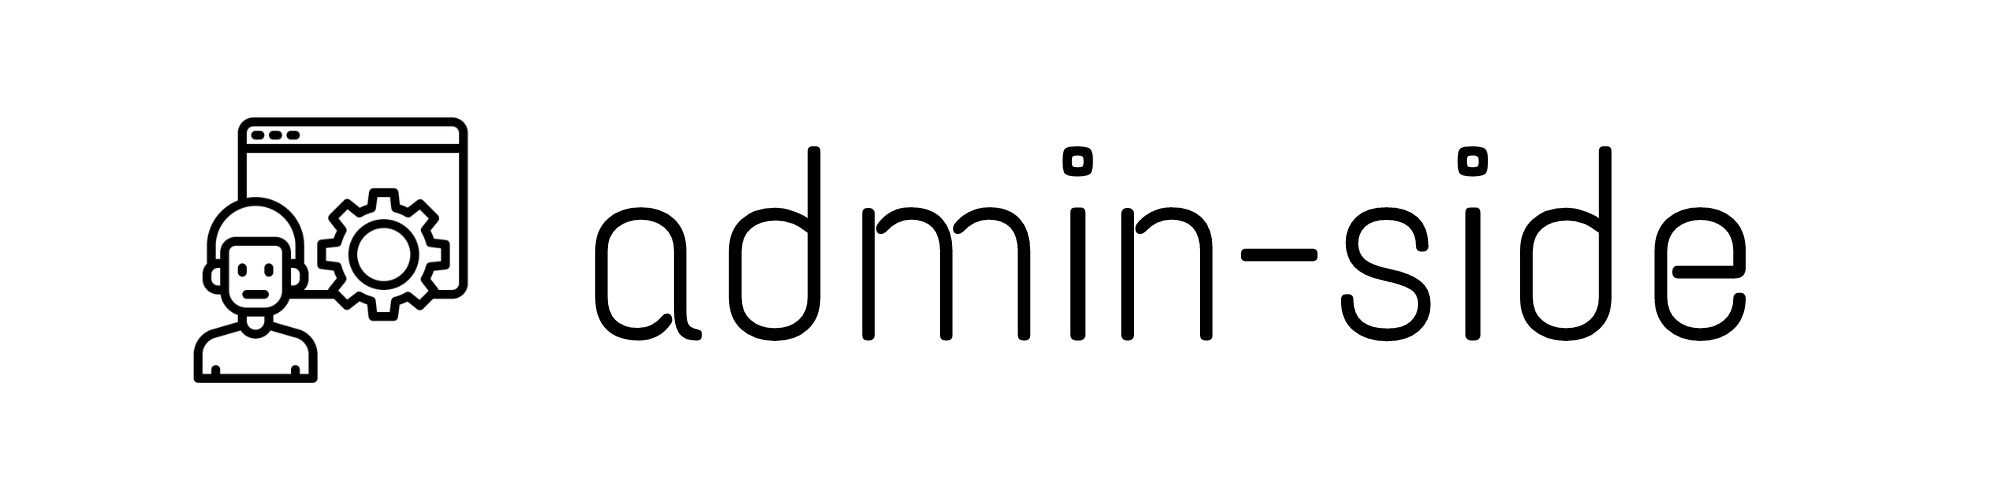 admin-side